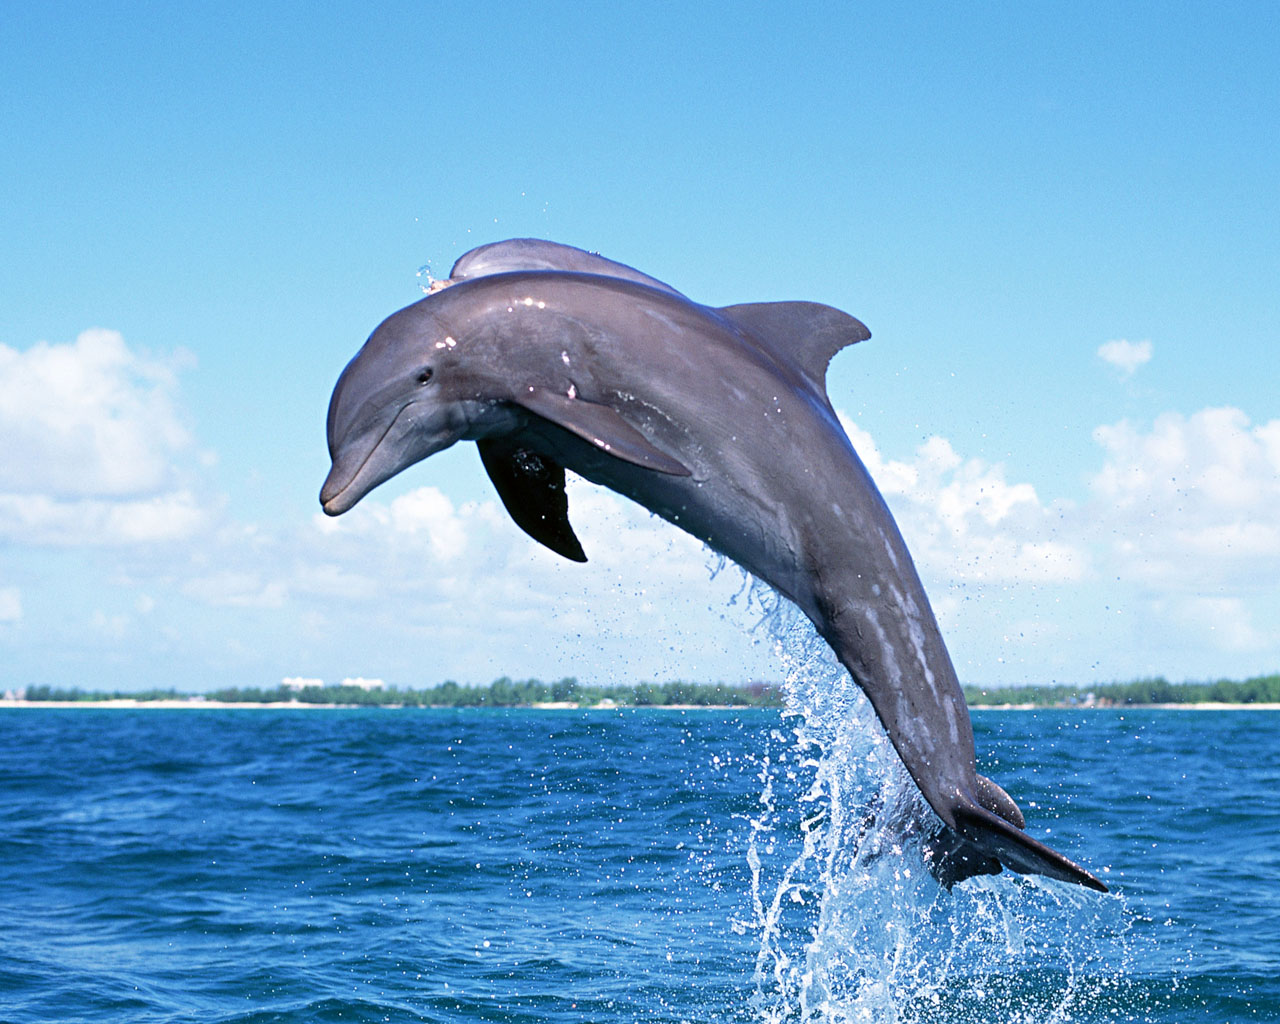 http://2.bp.blogspot.com/-DCARkjV1ktk/T8OaHdRoseI/AAAAAAAACu8/M4PnezLelps/s1600/Dolphin-Jumping.jpg